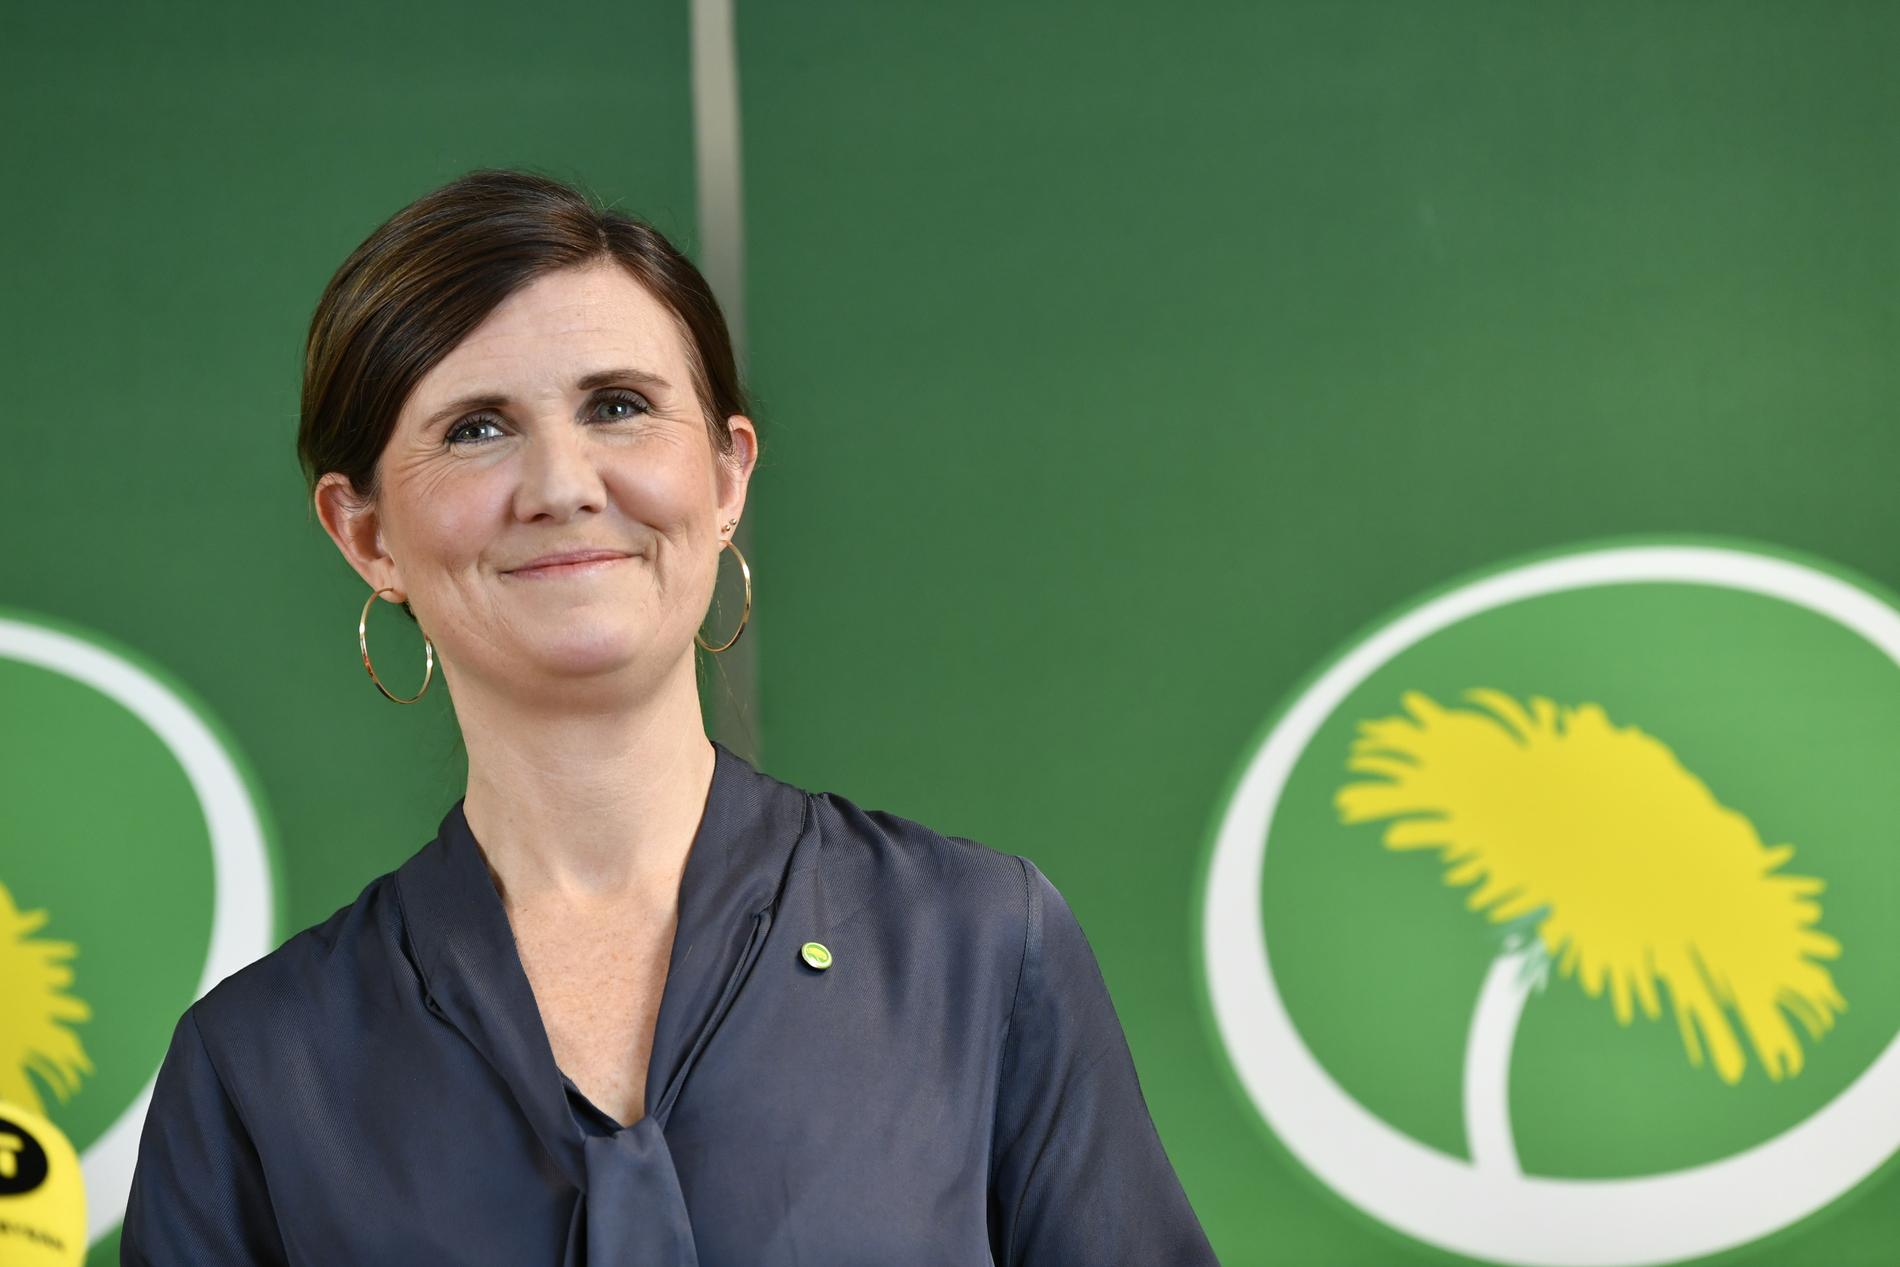 Miljöpartiets partisekreterare Märta Stenevi föreslås bli nytt språkrör.